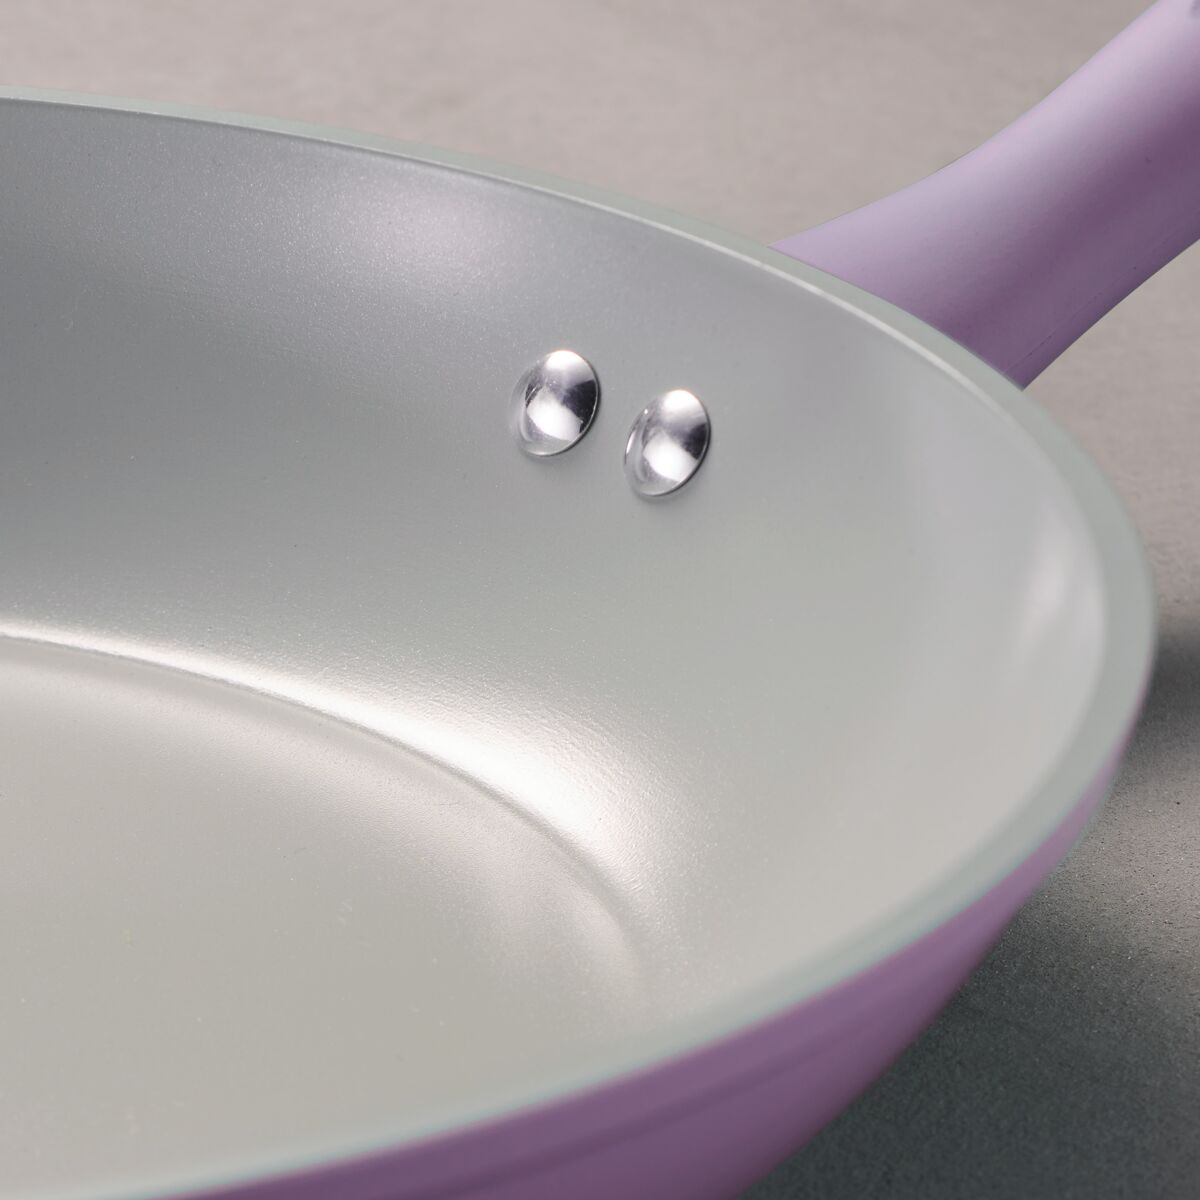 m-cooker purple color pot set cookware